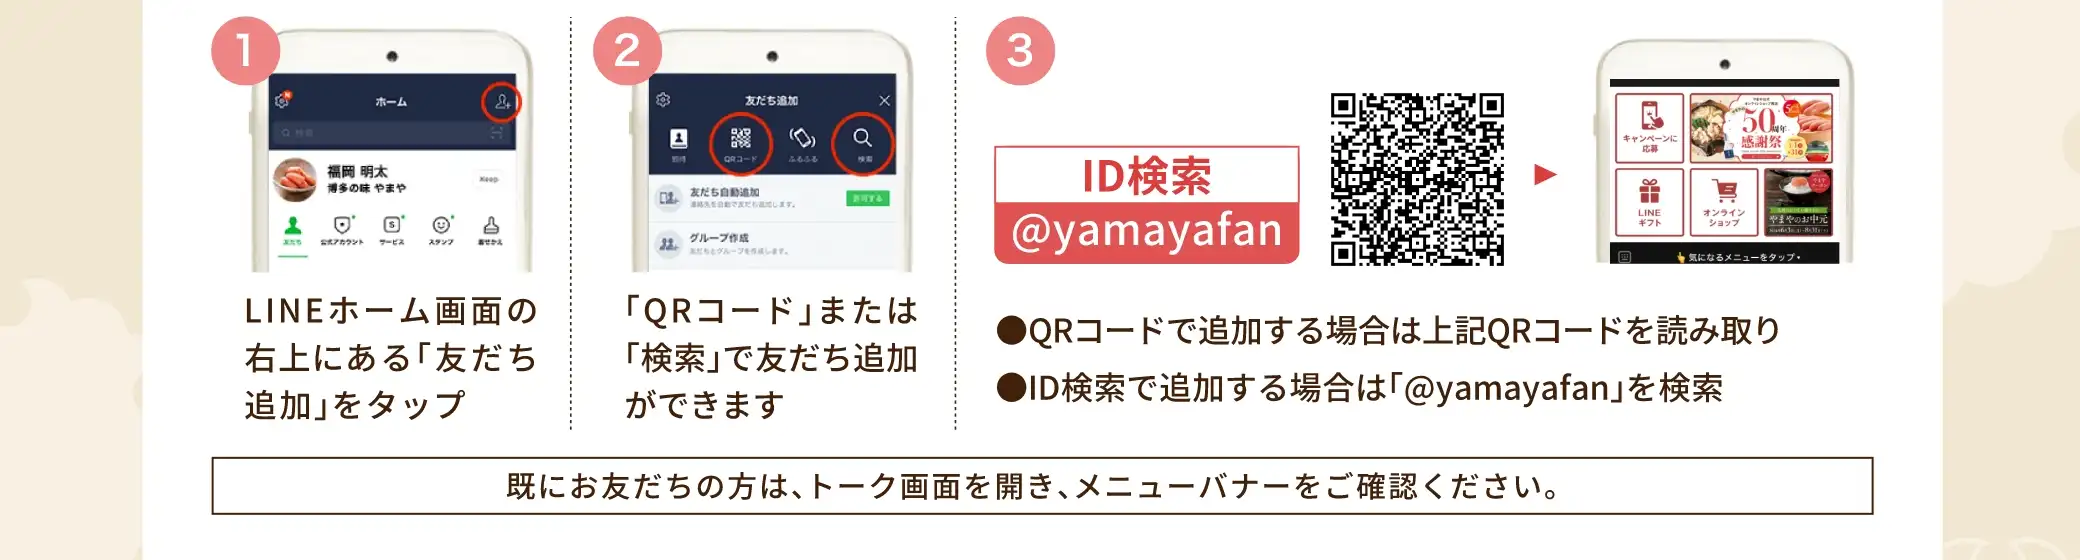 LINEにてID「@yamayafan」を検索して、友だち登録をしてください。